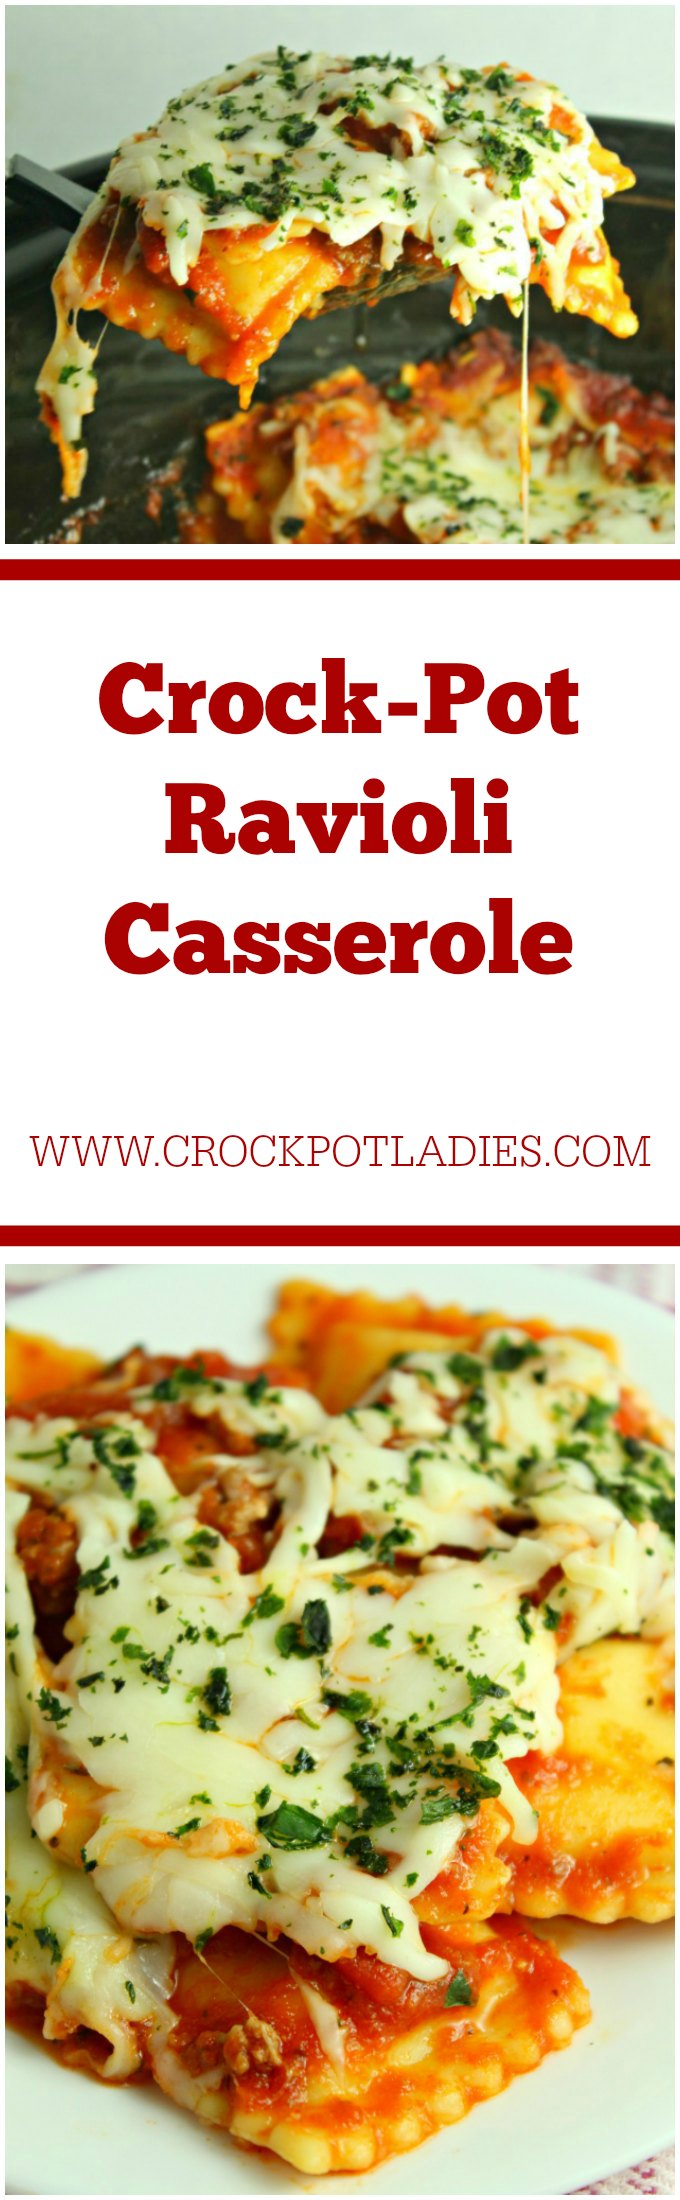 Crock-Pot Ravioli Casserole